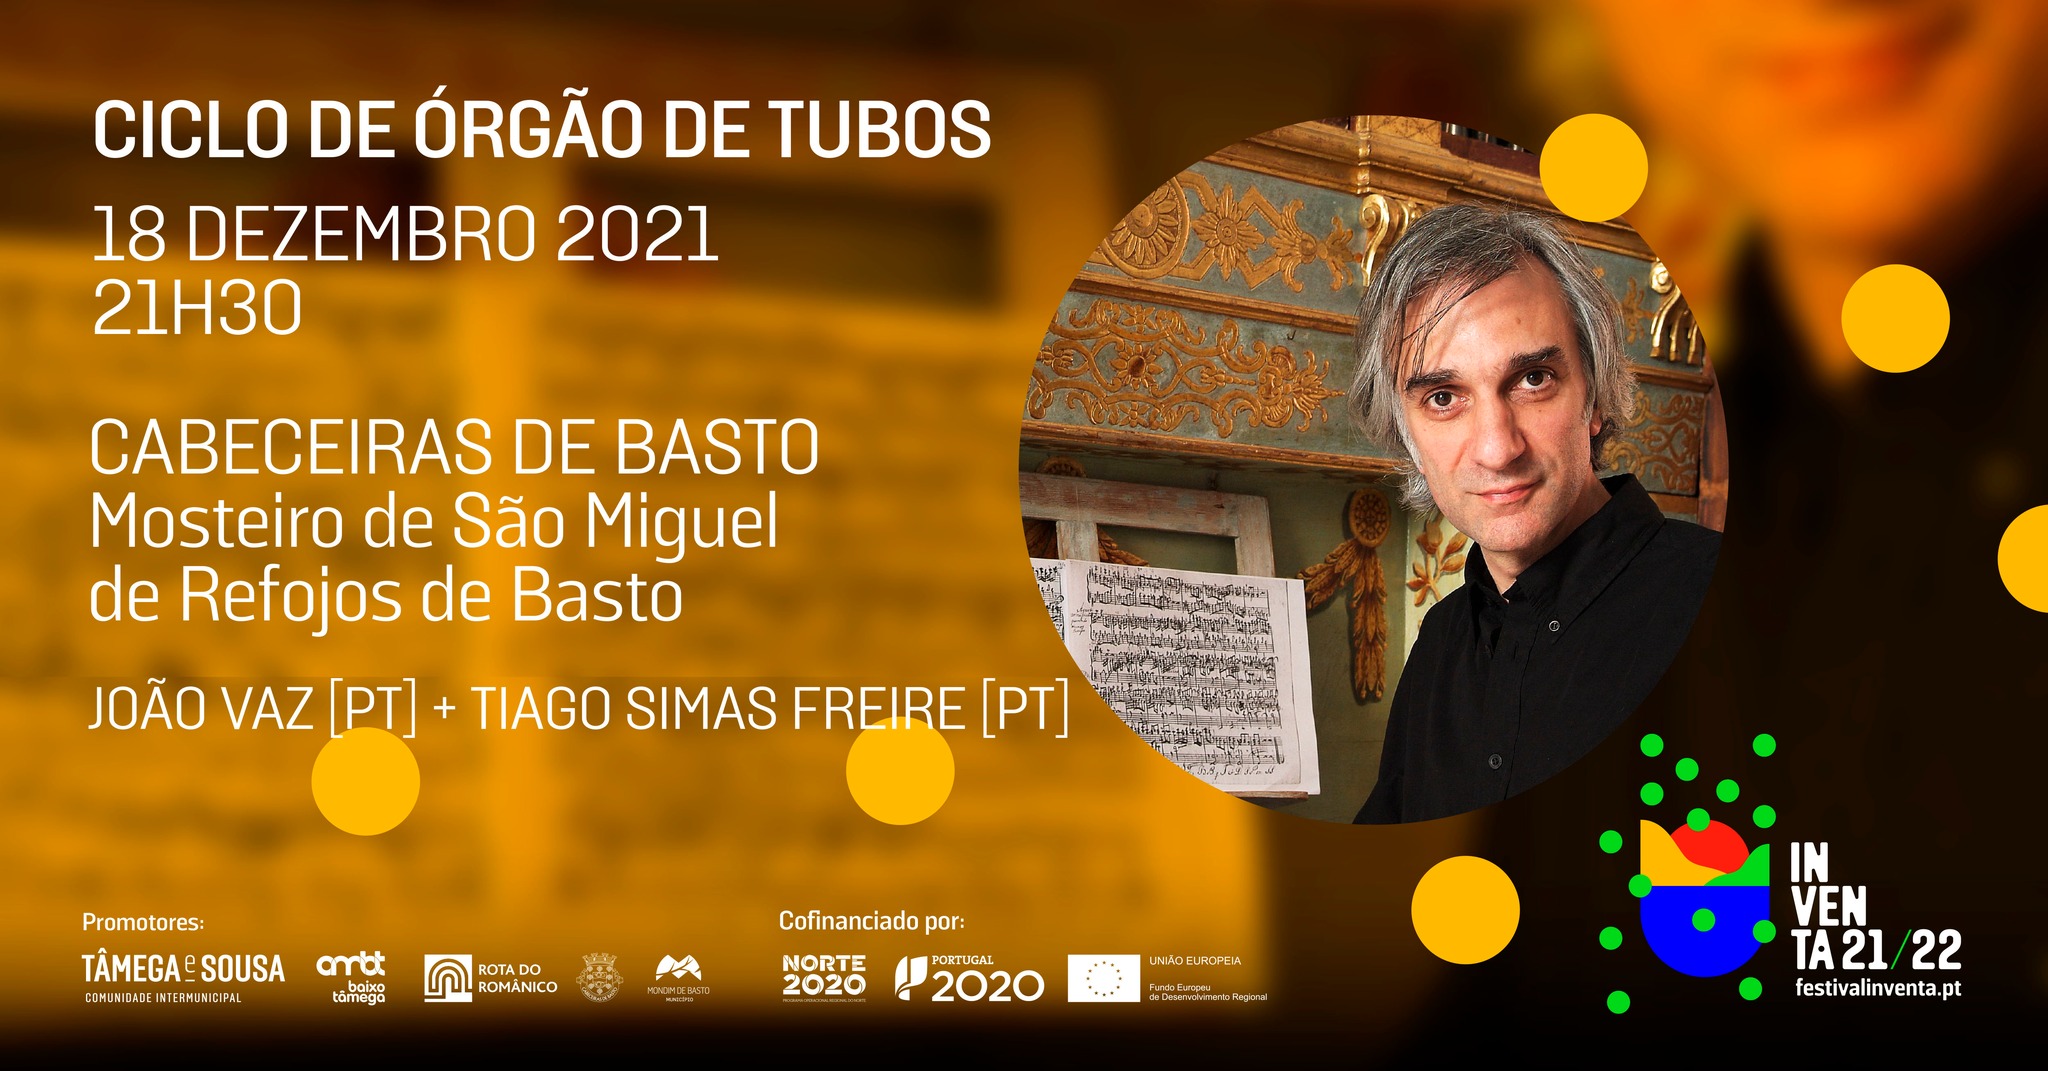 João Vaz [PT] + Tiago Simas Freire [PT] - Ciclo de órgão de tubos - Cabeceiras de Basto